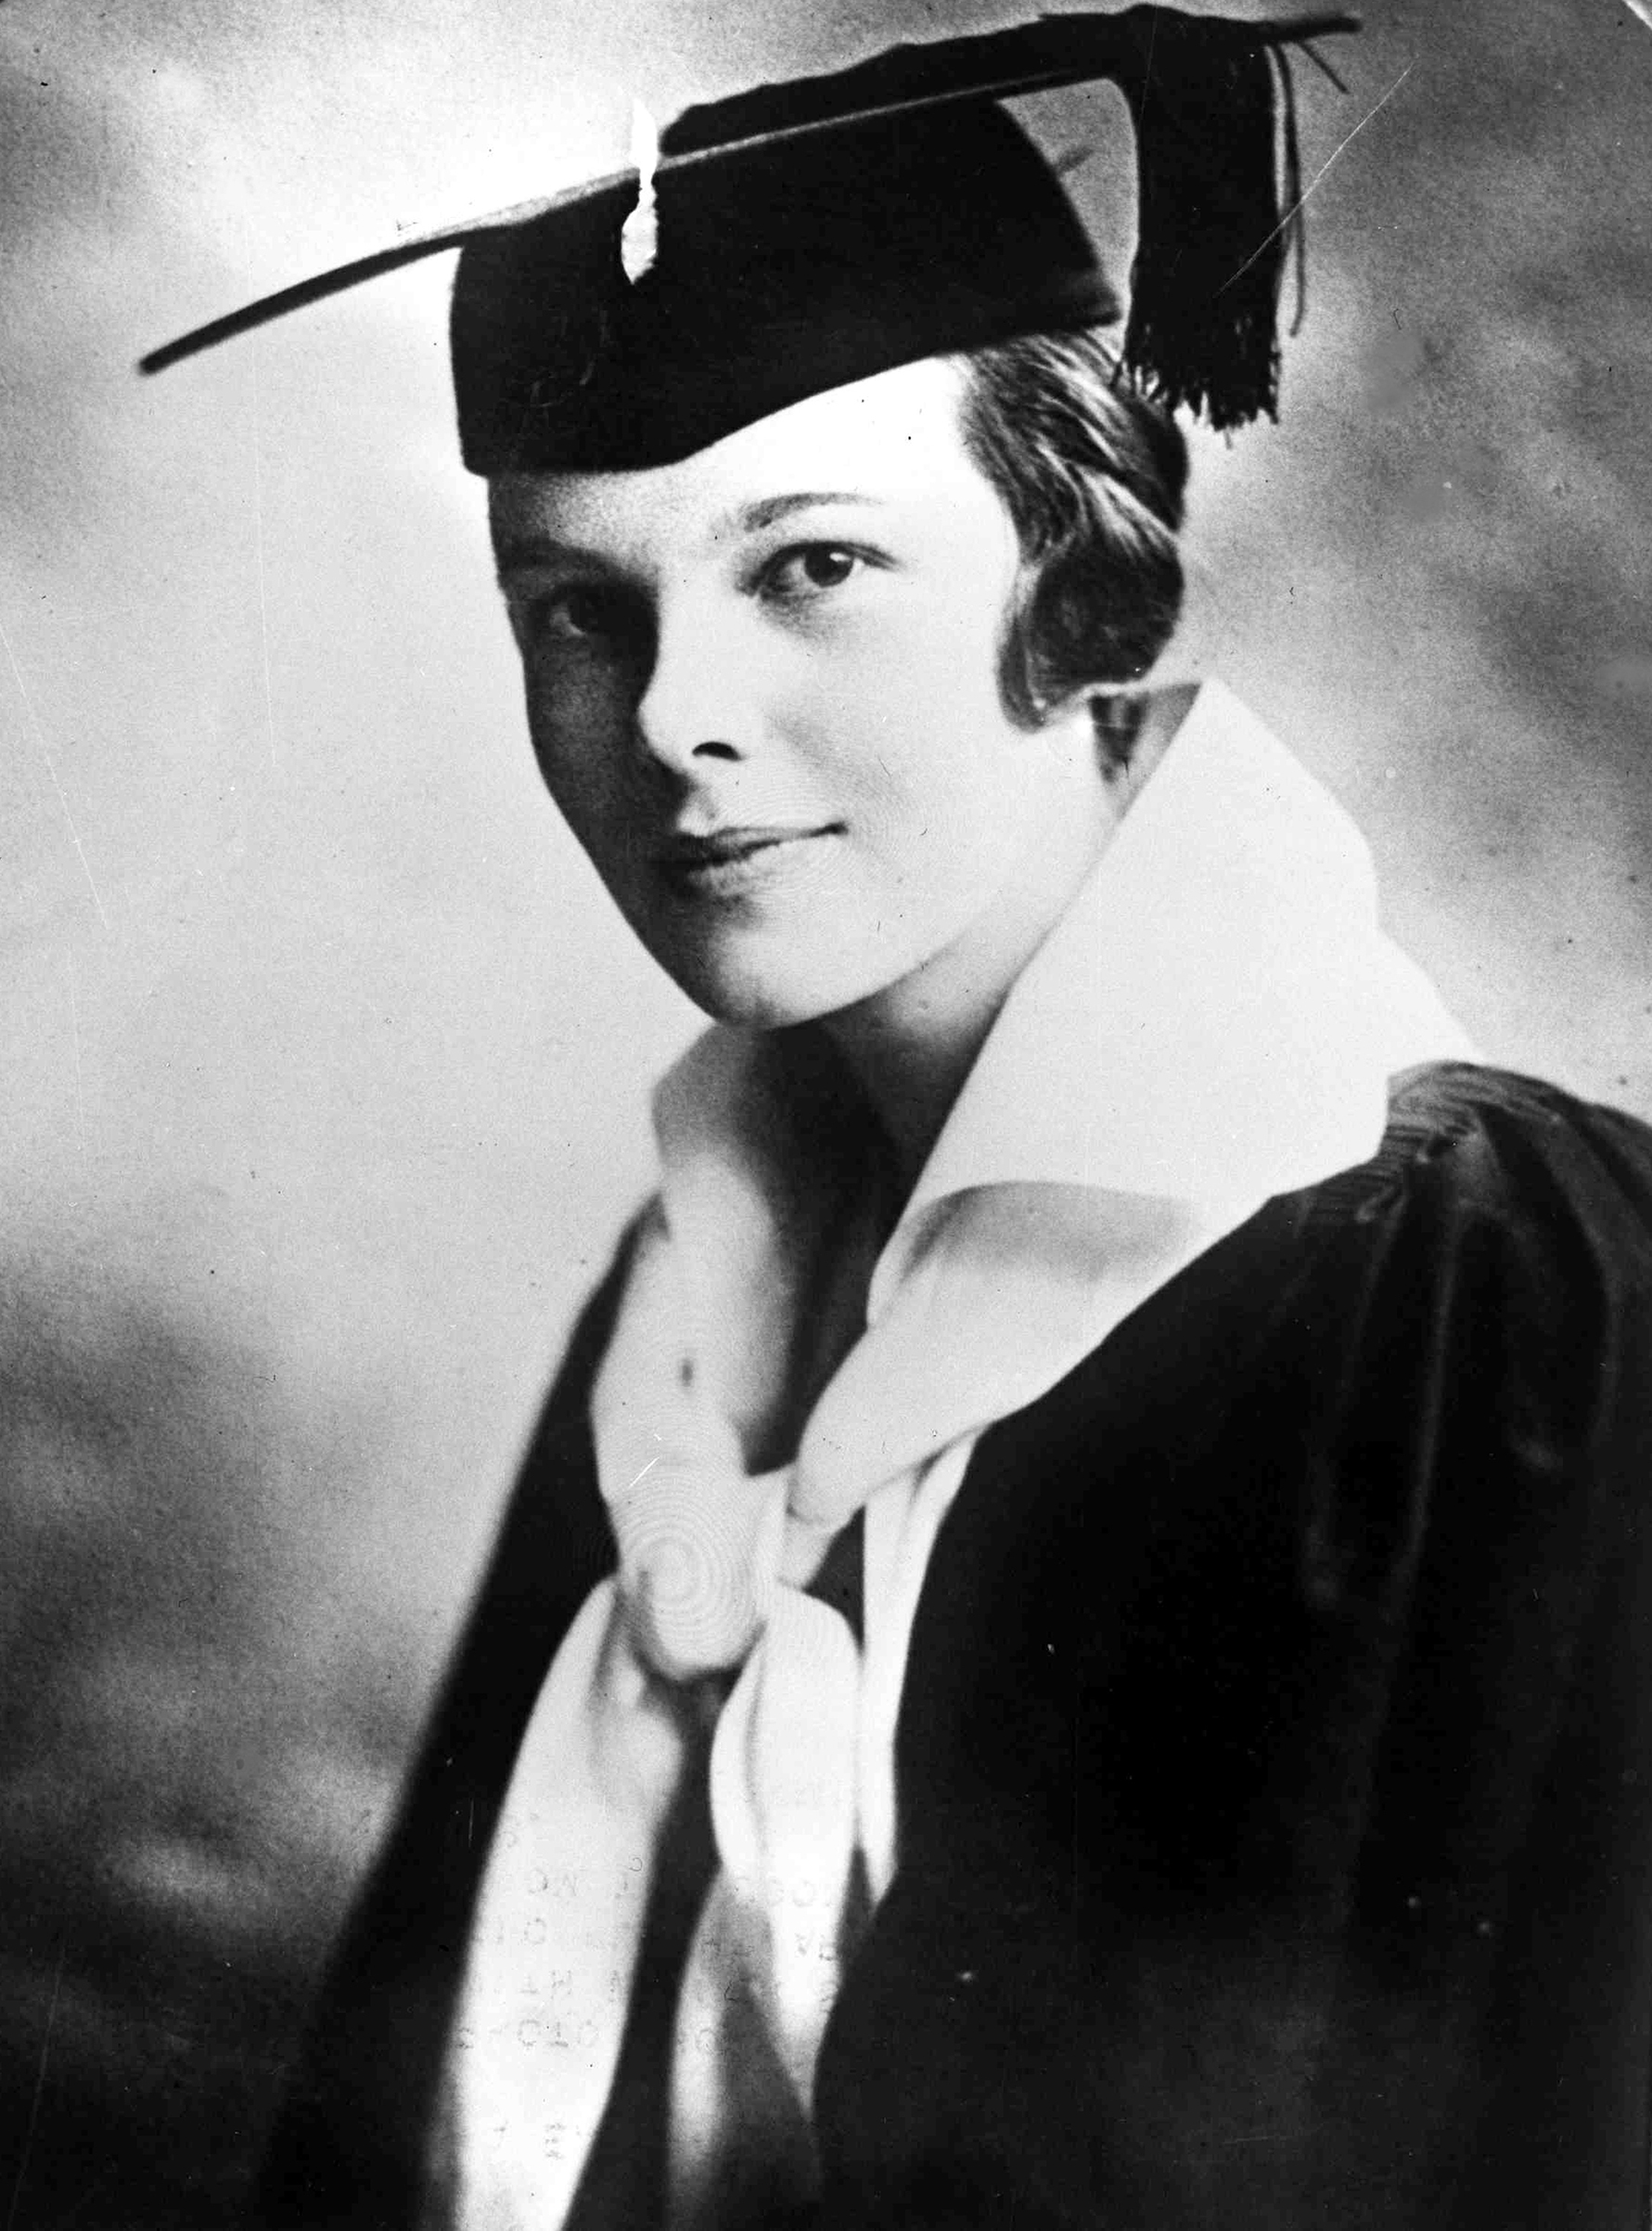 Amelia Earhart when she graduated from Ogontz School in Philadelphia in 1918.